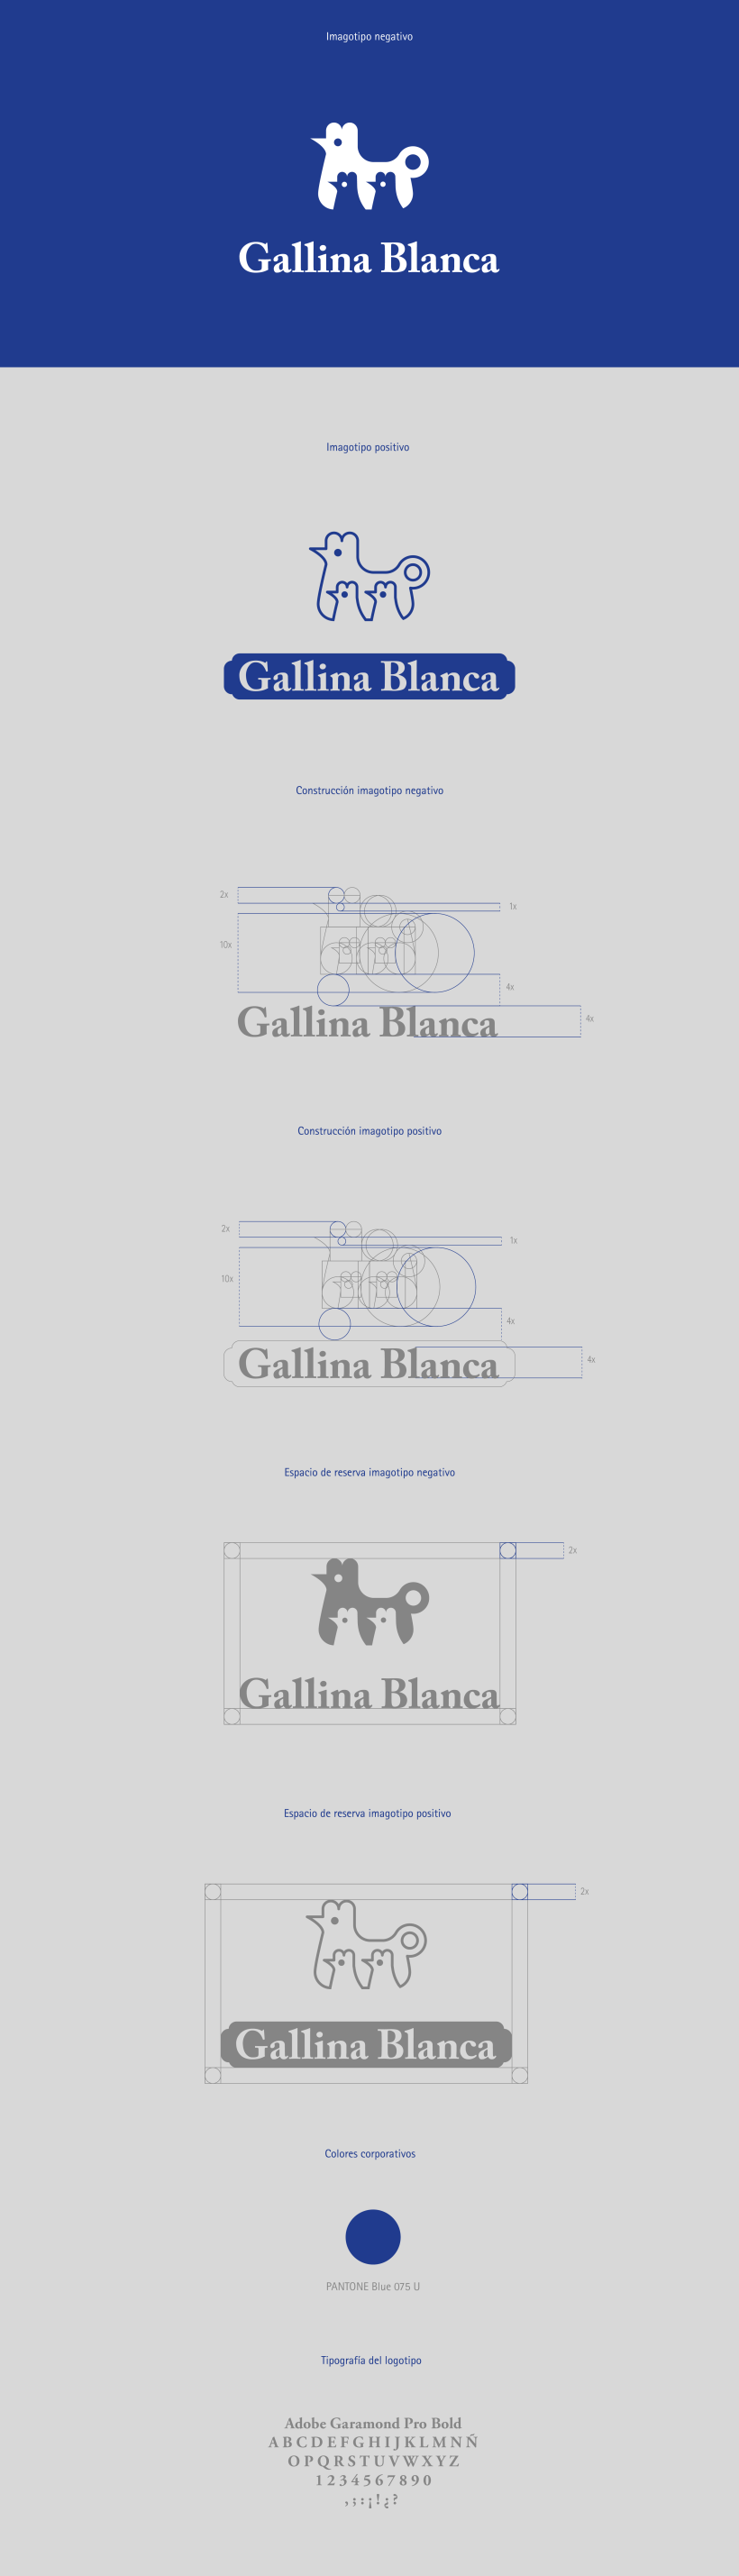 Gallina Blanca | Proyecto ficticio 1